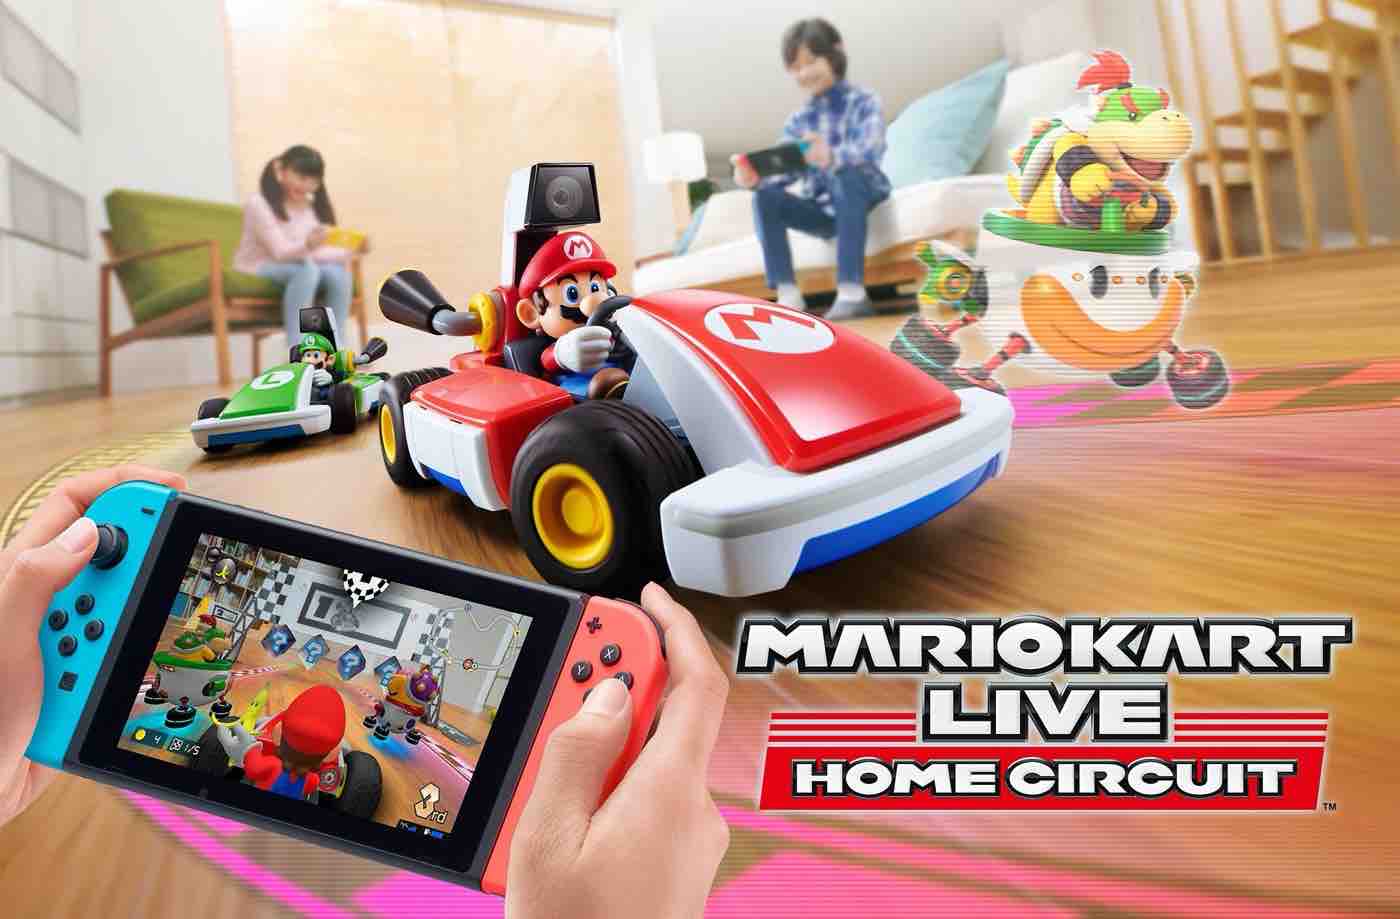 Mario Kart Live Home Circuit réalise un rêve de gosse (Vidéo)